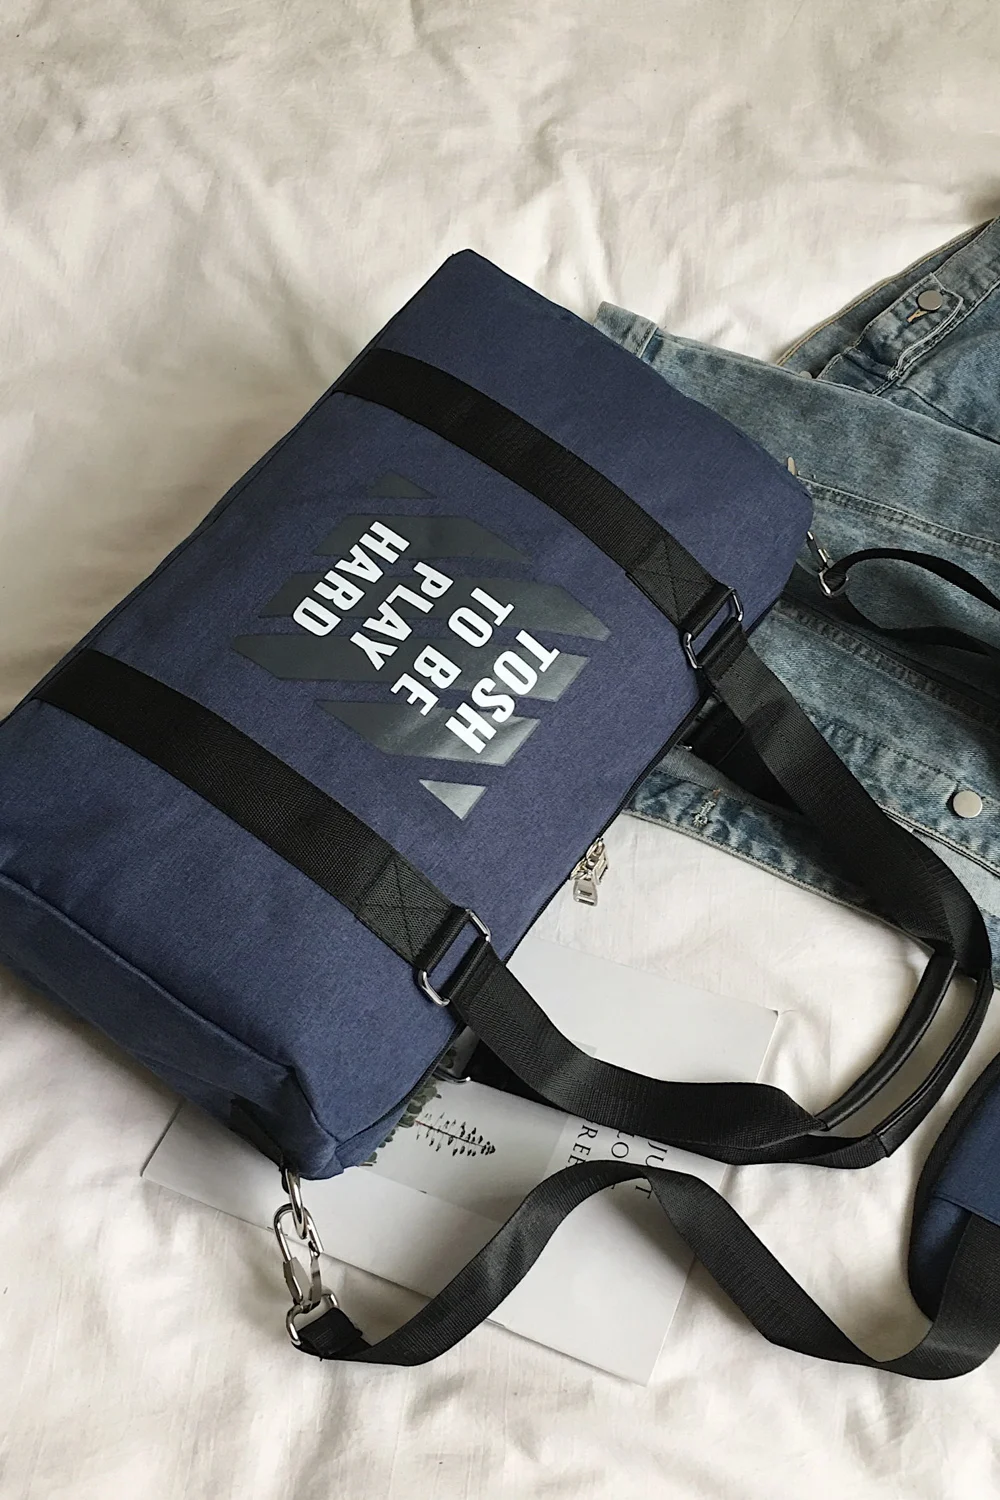 Модная сумка для женщина Многофункциональный Спорт Путешествия Фитнес сумки Зал Йоги Мешок Открытый